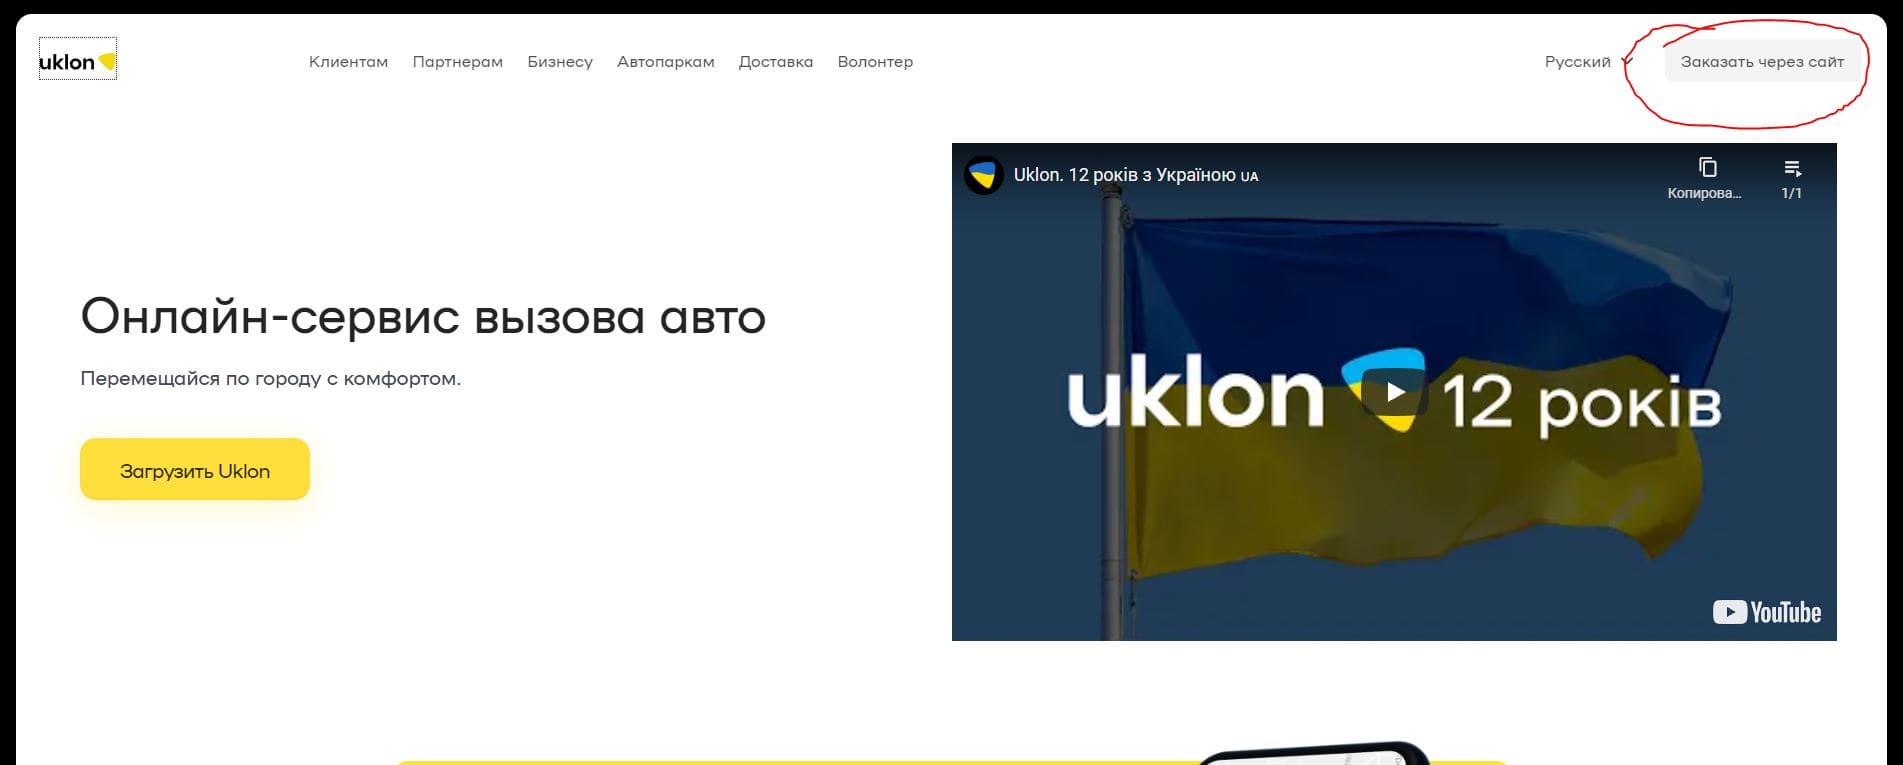 Уклон (uklon.com.ua)